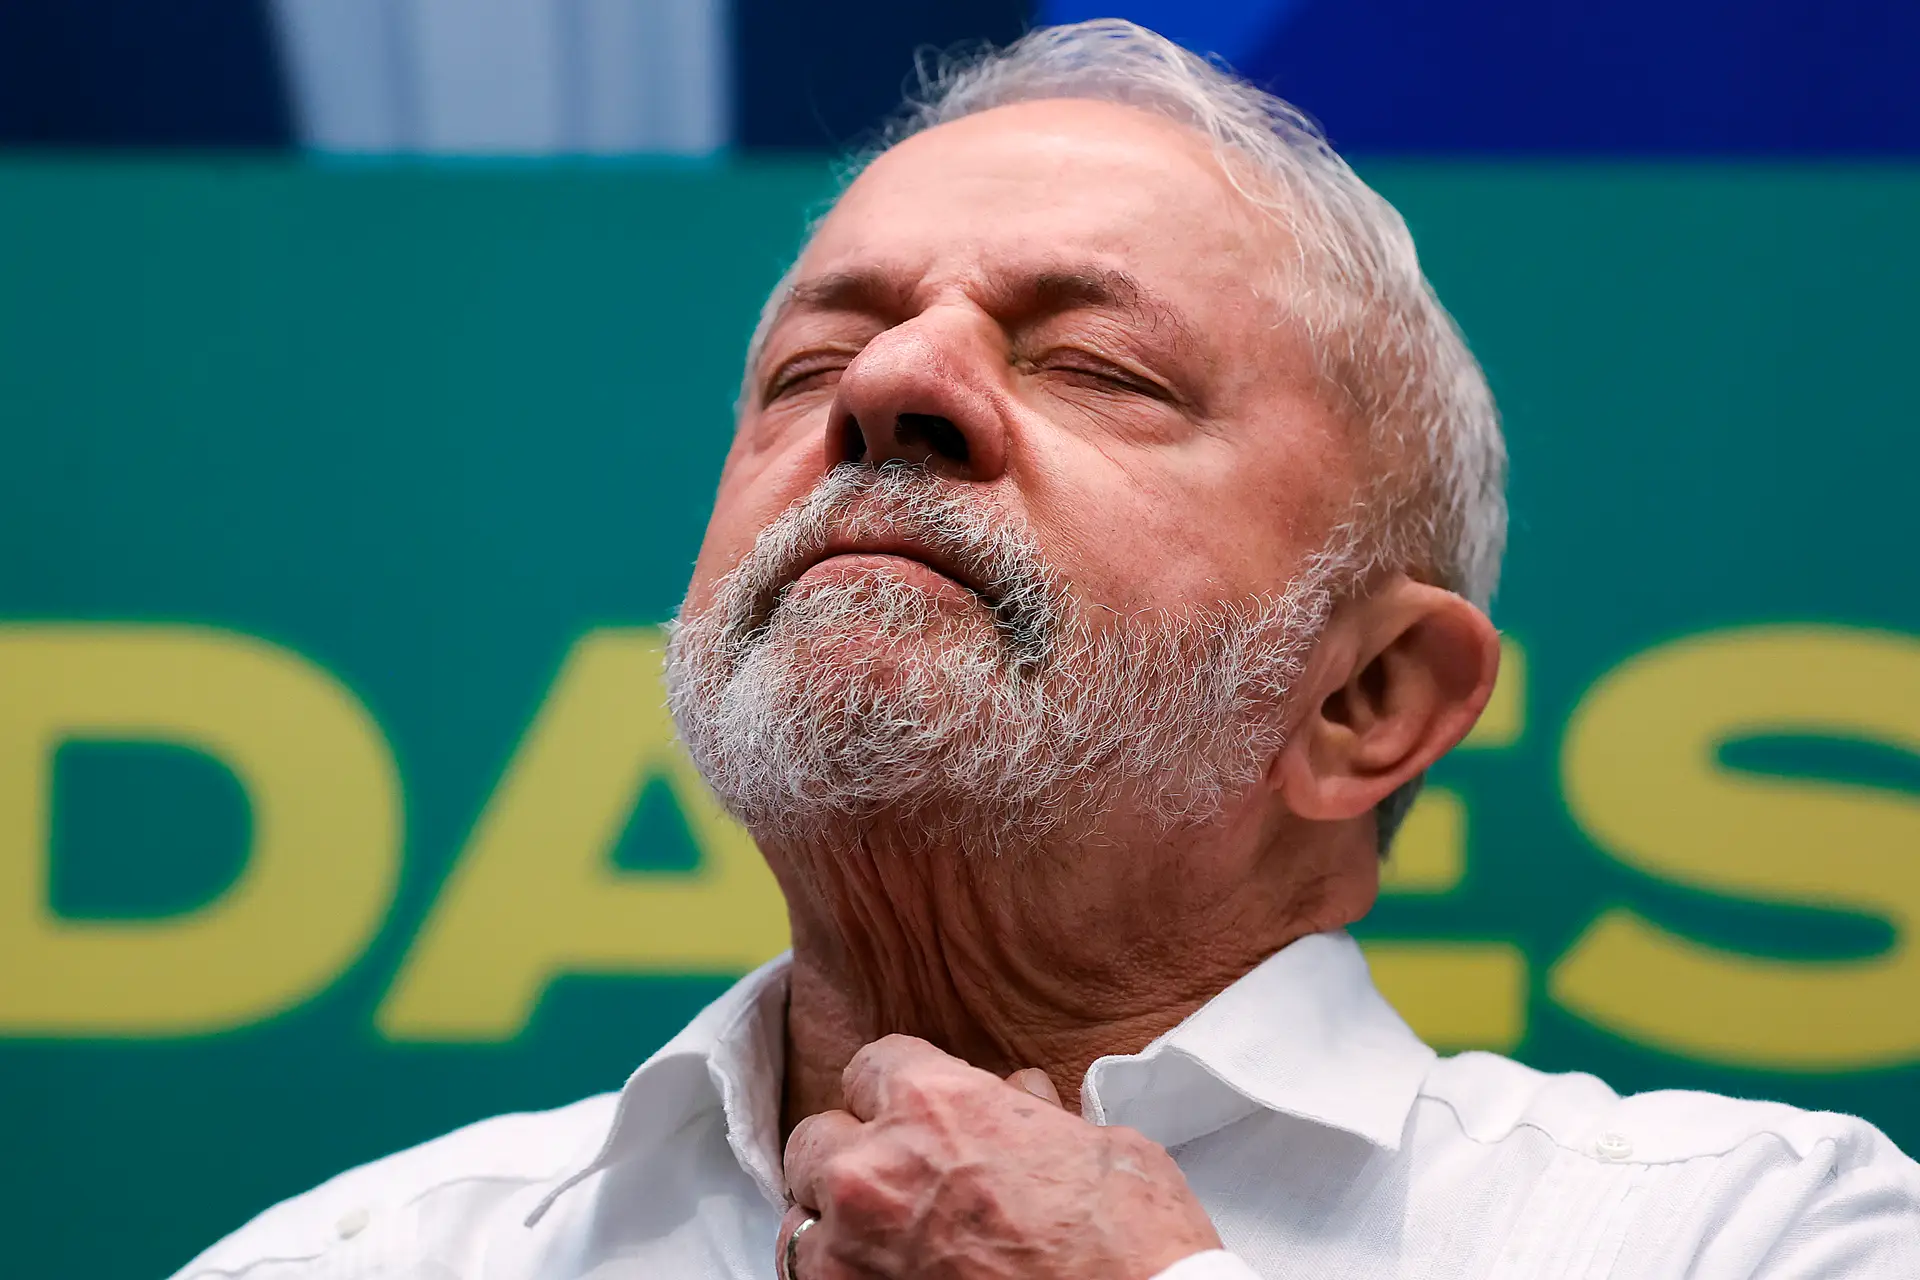 Brasil/Eleições: PS saúda Lula e espera que os brasileiros rejeitem derivas autoritárias